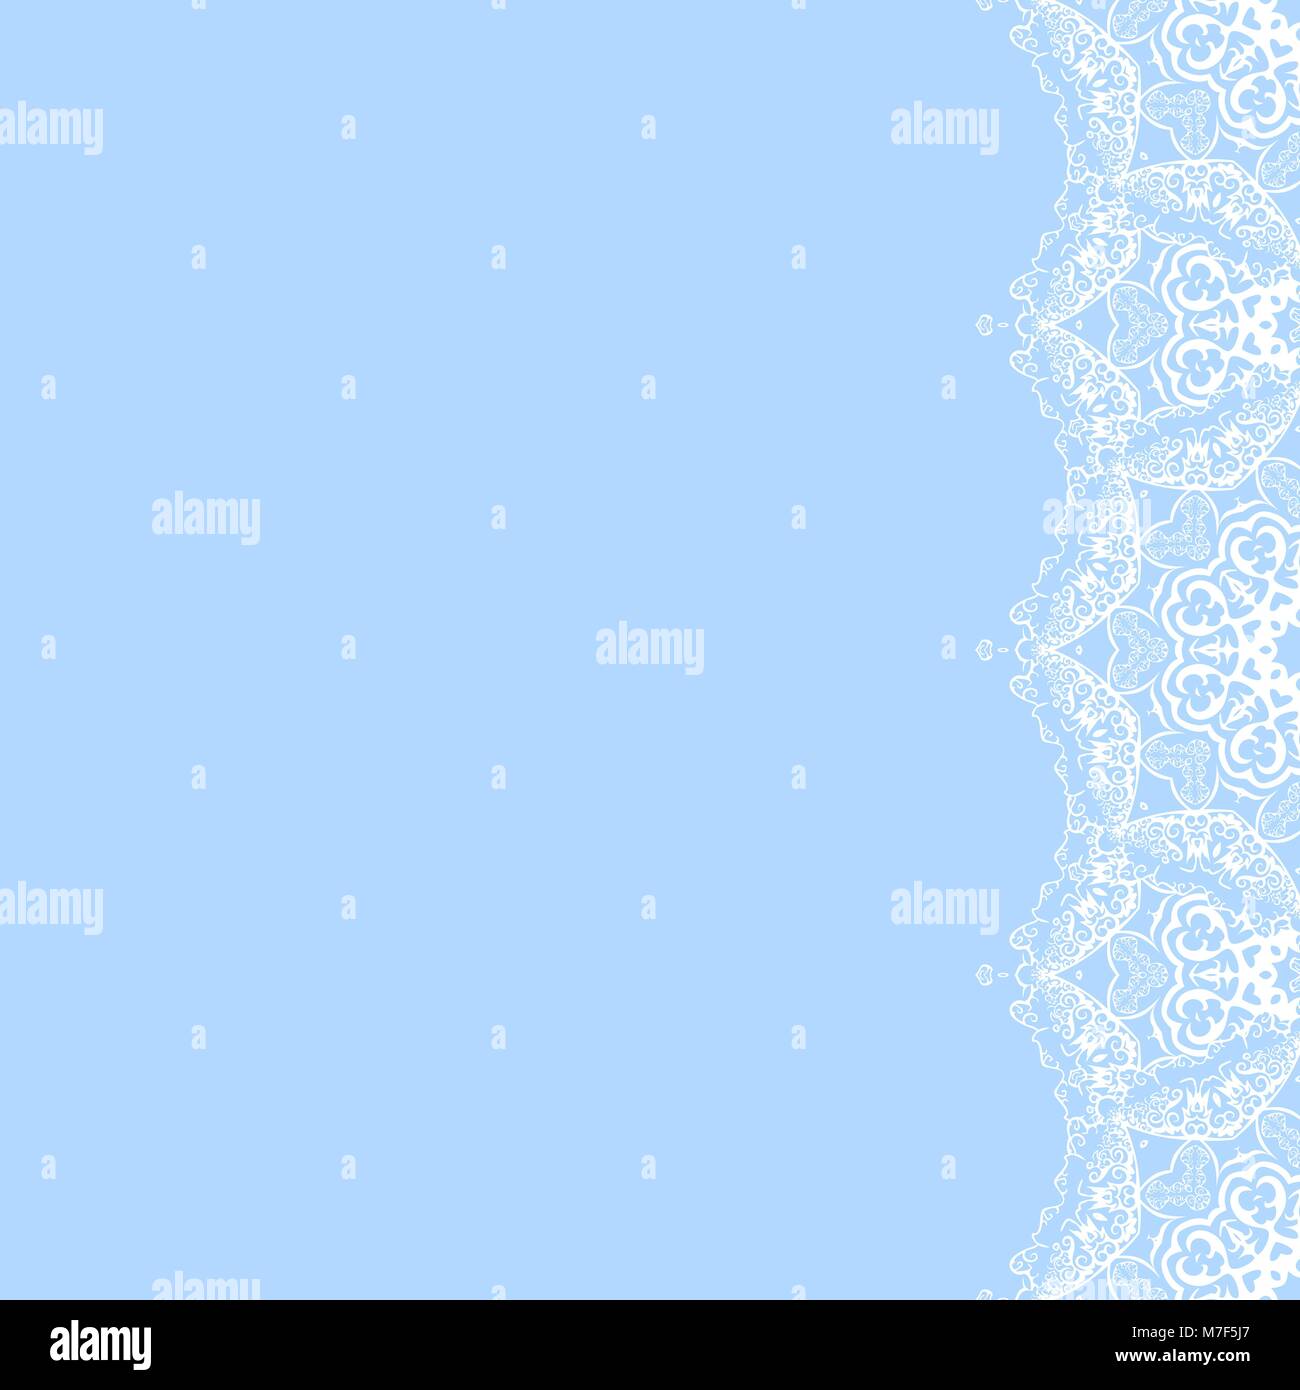 Cadre décoratif de vecteur de flocons blancs sur fond bleu. Carte d'invitation de souhaits pour Noël, Nouvel An Illustration de Vecteur